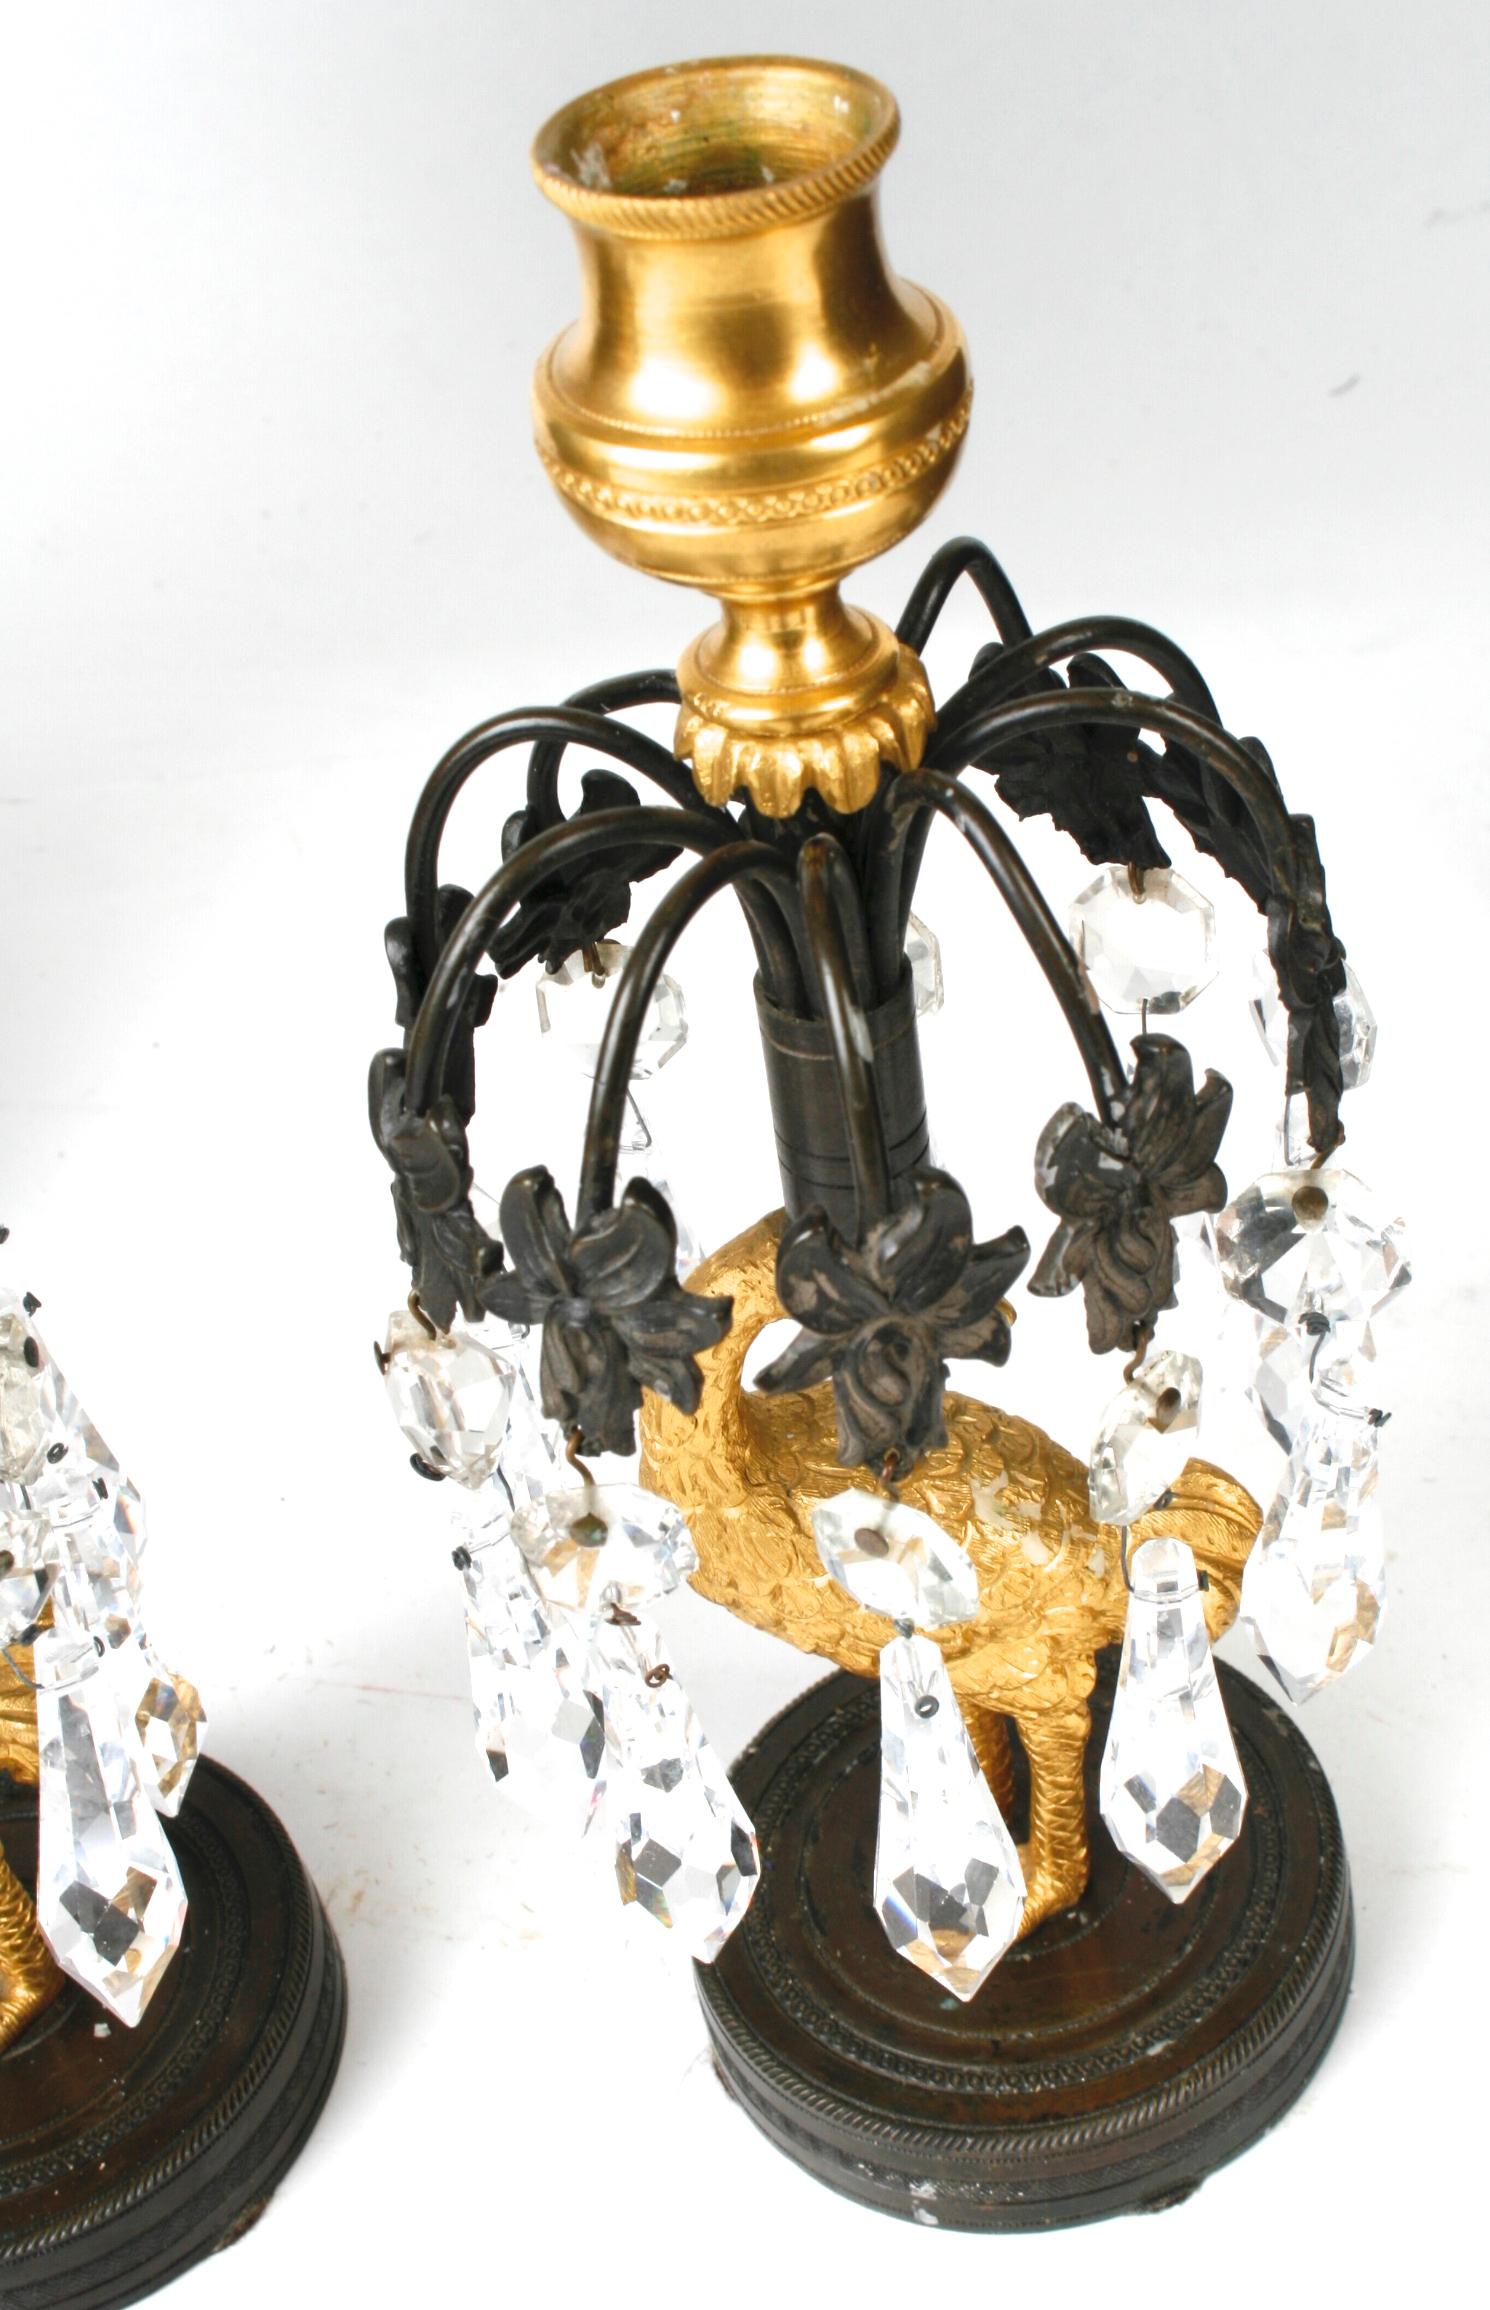 Ein Paar vergoldete und patinierte Bronzeleuchter aus dem frühen 19. Jahrhundert. Jede hat florale Strahlen mit Kristalllüstern auf vergoldeten, straußenförmigen Stielen, die auf runden Sockeln stehen. Wegen der Kristalltropfen reflektieren sie das